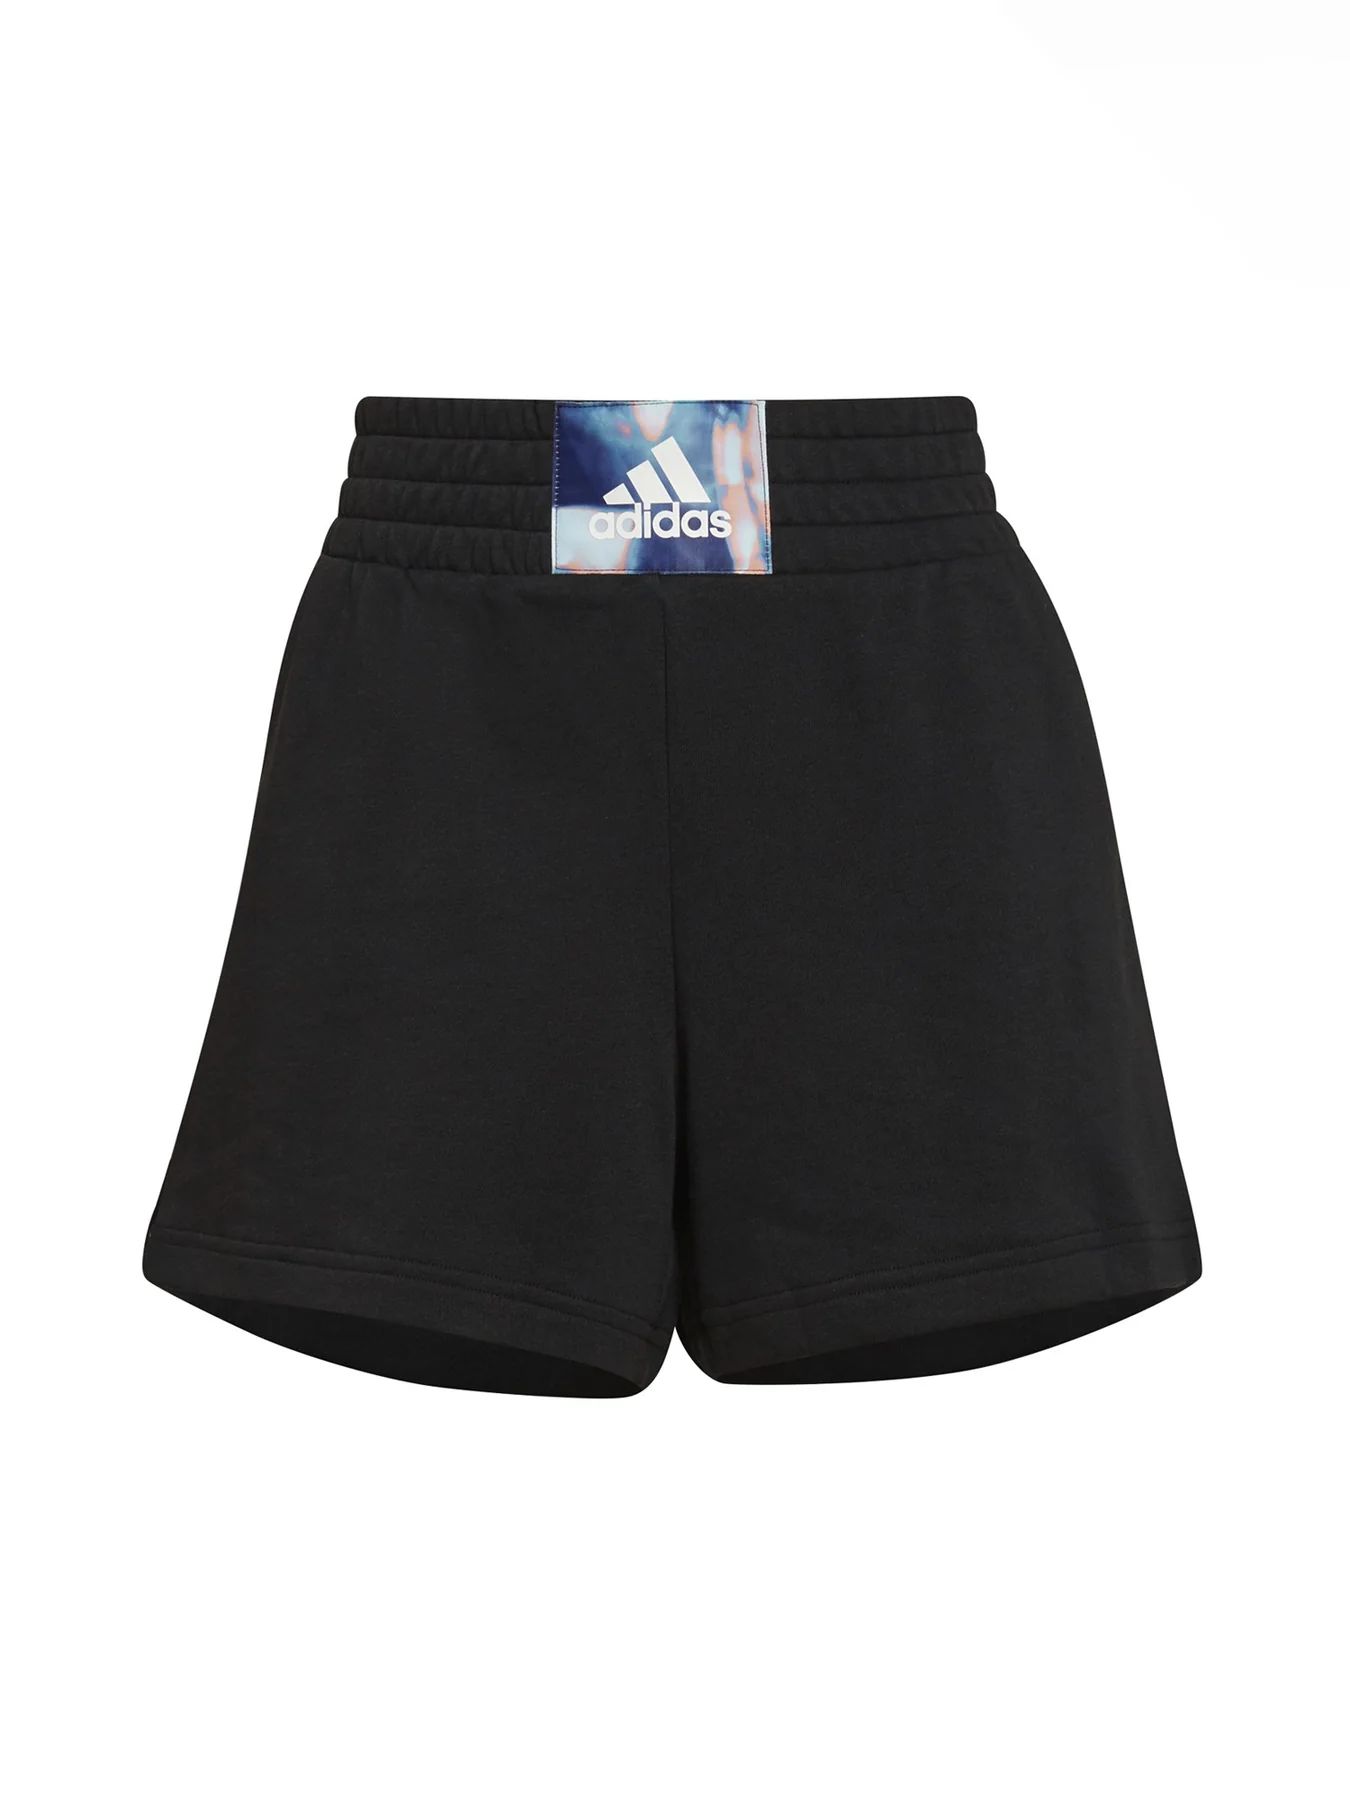 Спортивные шорты женские Adidas GS3858 черные XS